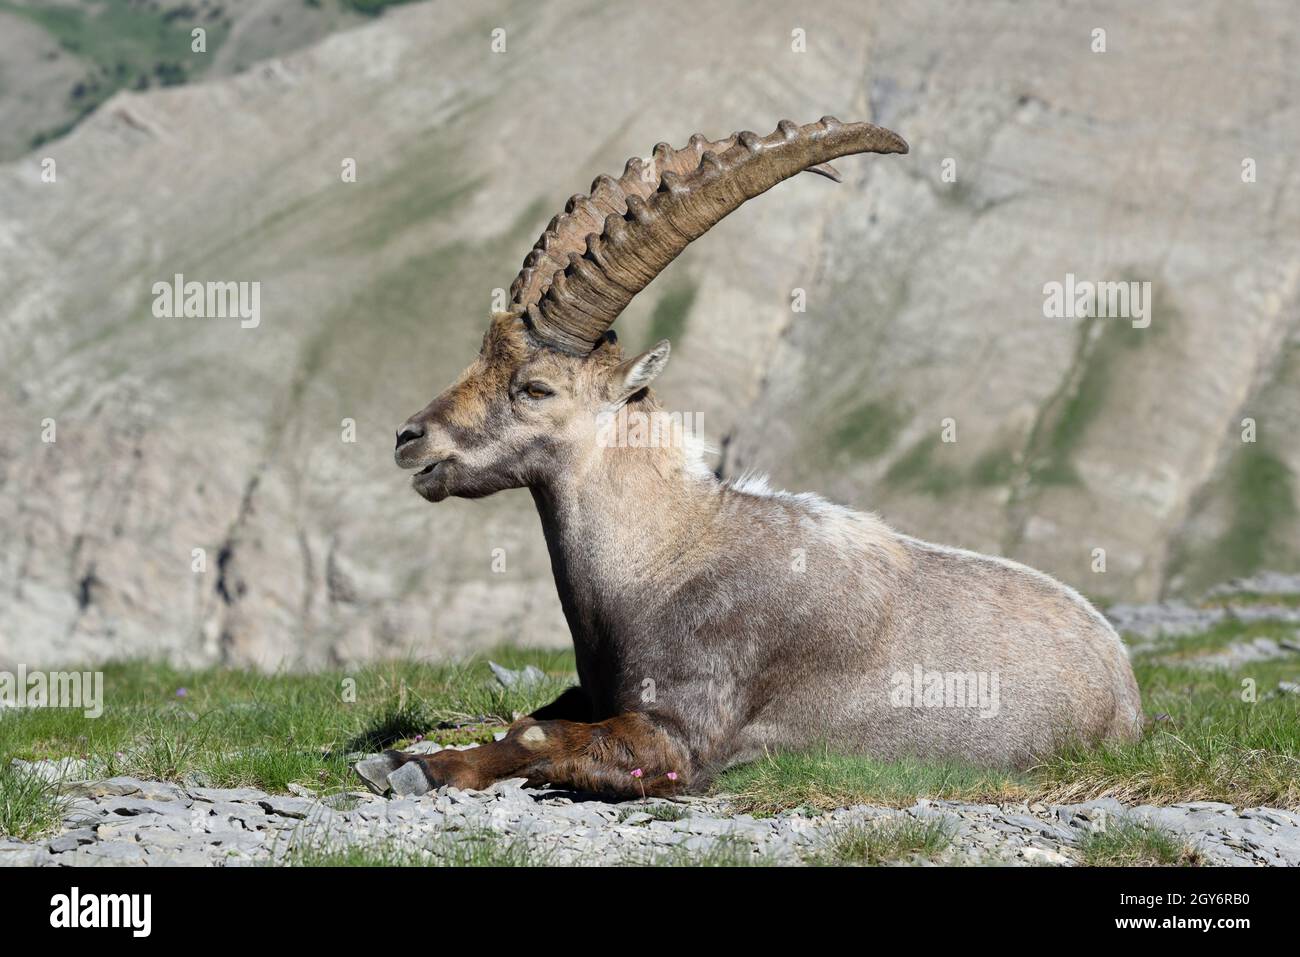 Ritratto di single mature maschio Alpine Ibex, Capra ibex, nel Parco Nazionale del Mercantour Alpi francesi, w Camouflage Rock-color o Beige Coat, Francia Foto Stock